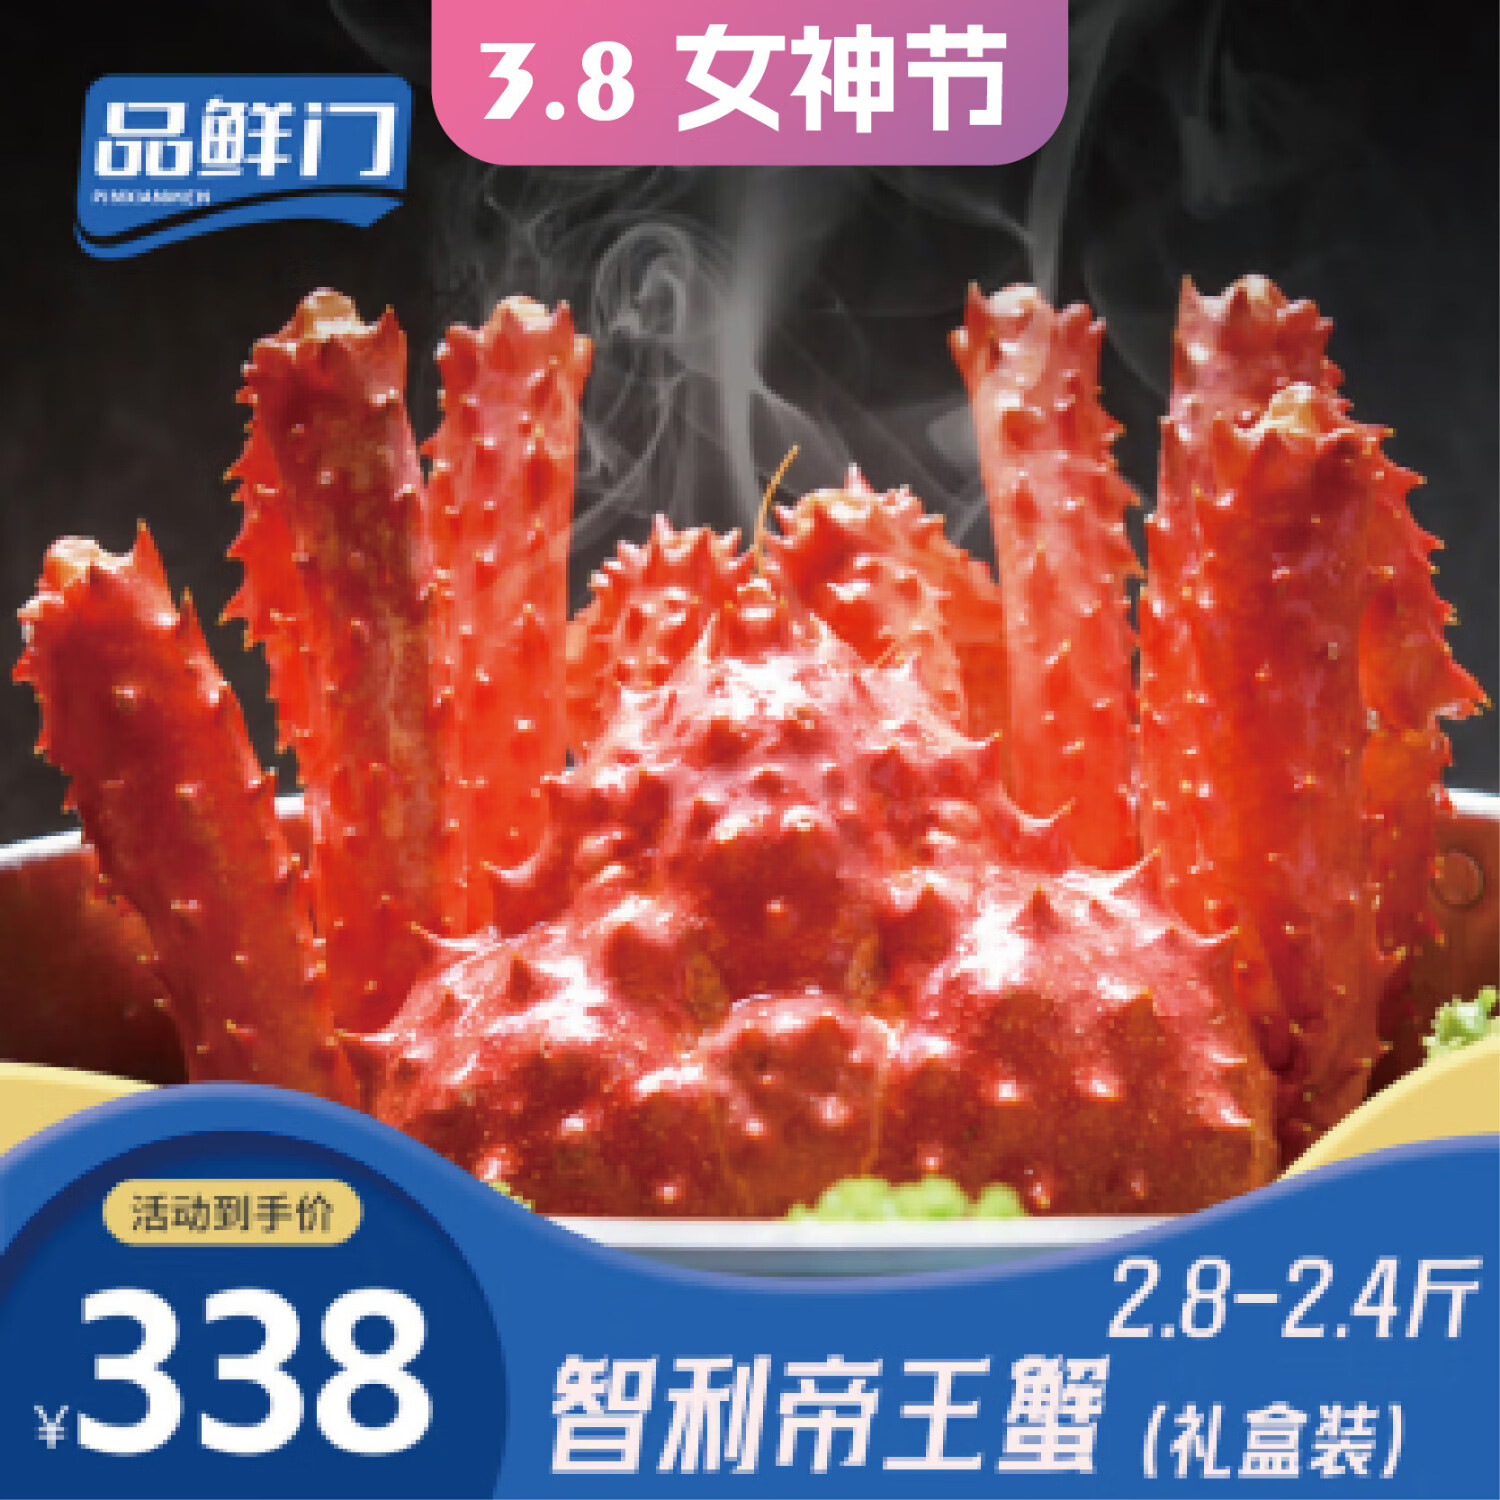 品鲜门 帝王蟹礼盒 鲜活熟冻大螃蟹腿蟹脚蟹类生鲜 海鲜礼盒 帝王蟹2.8-2.4斤怎么样,好用不?